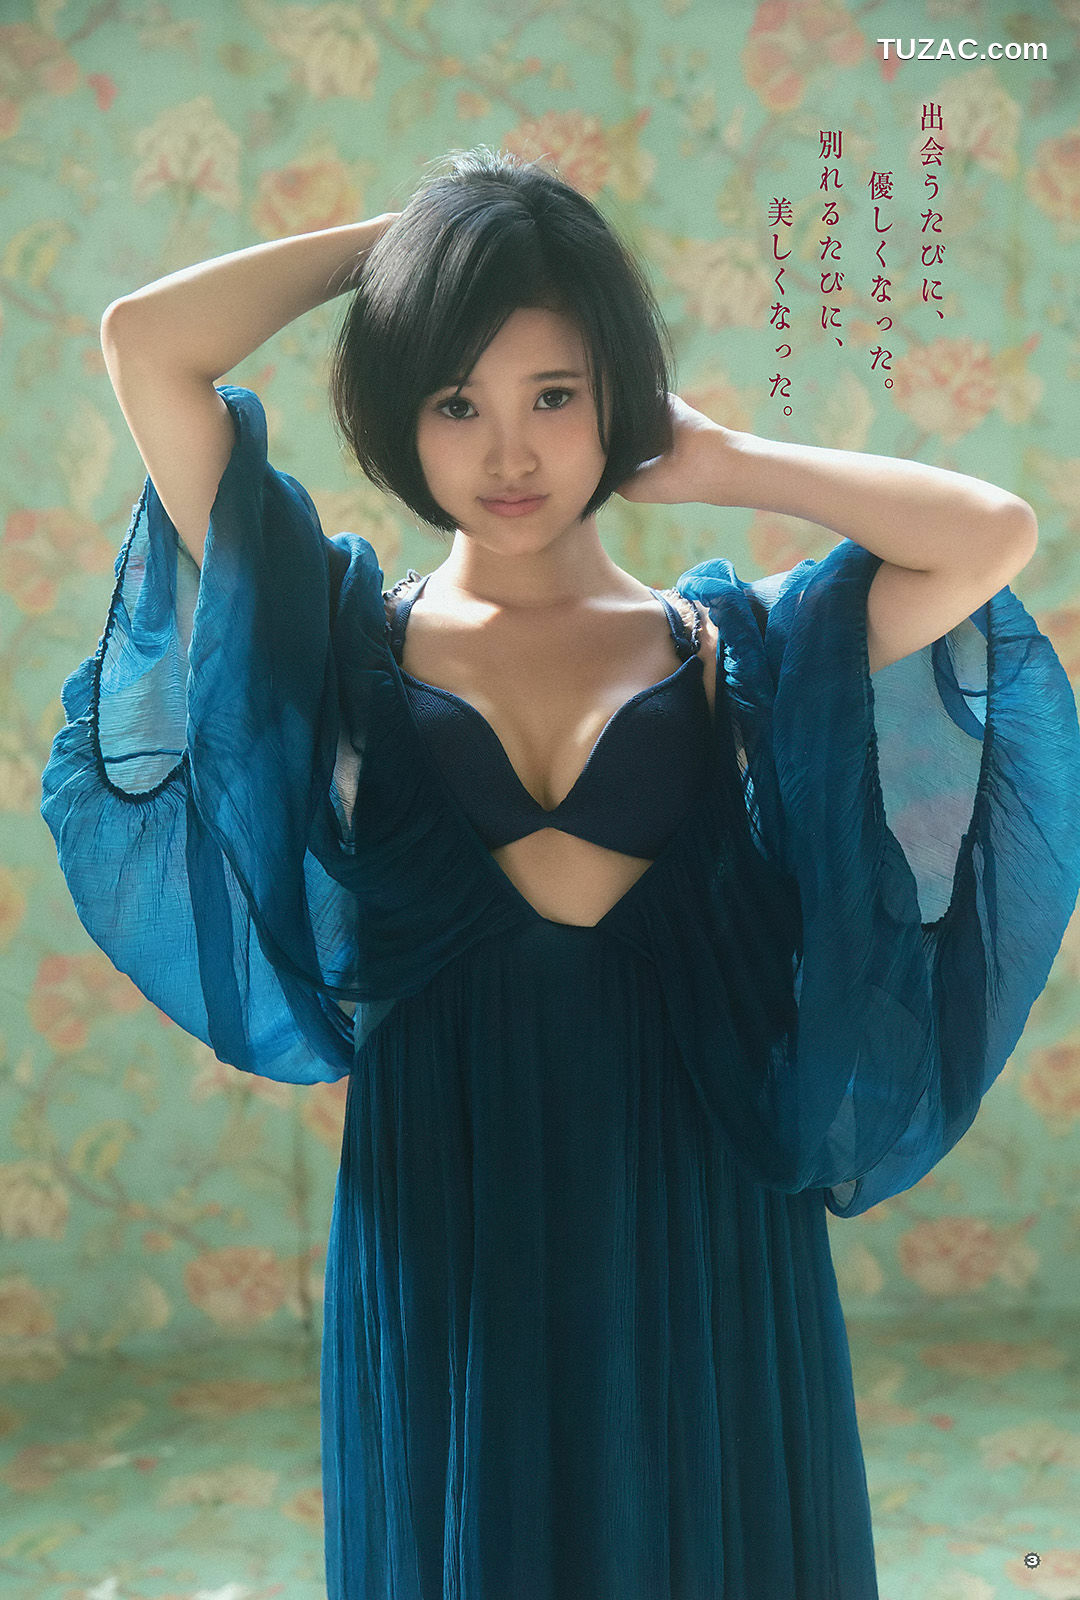 Young Gangan杂志写真_ 兒玉遥 莉音 2015年No.23 写真杂志[14P]